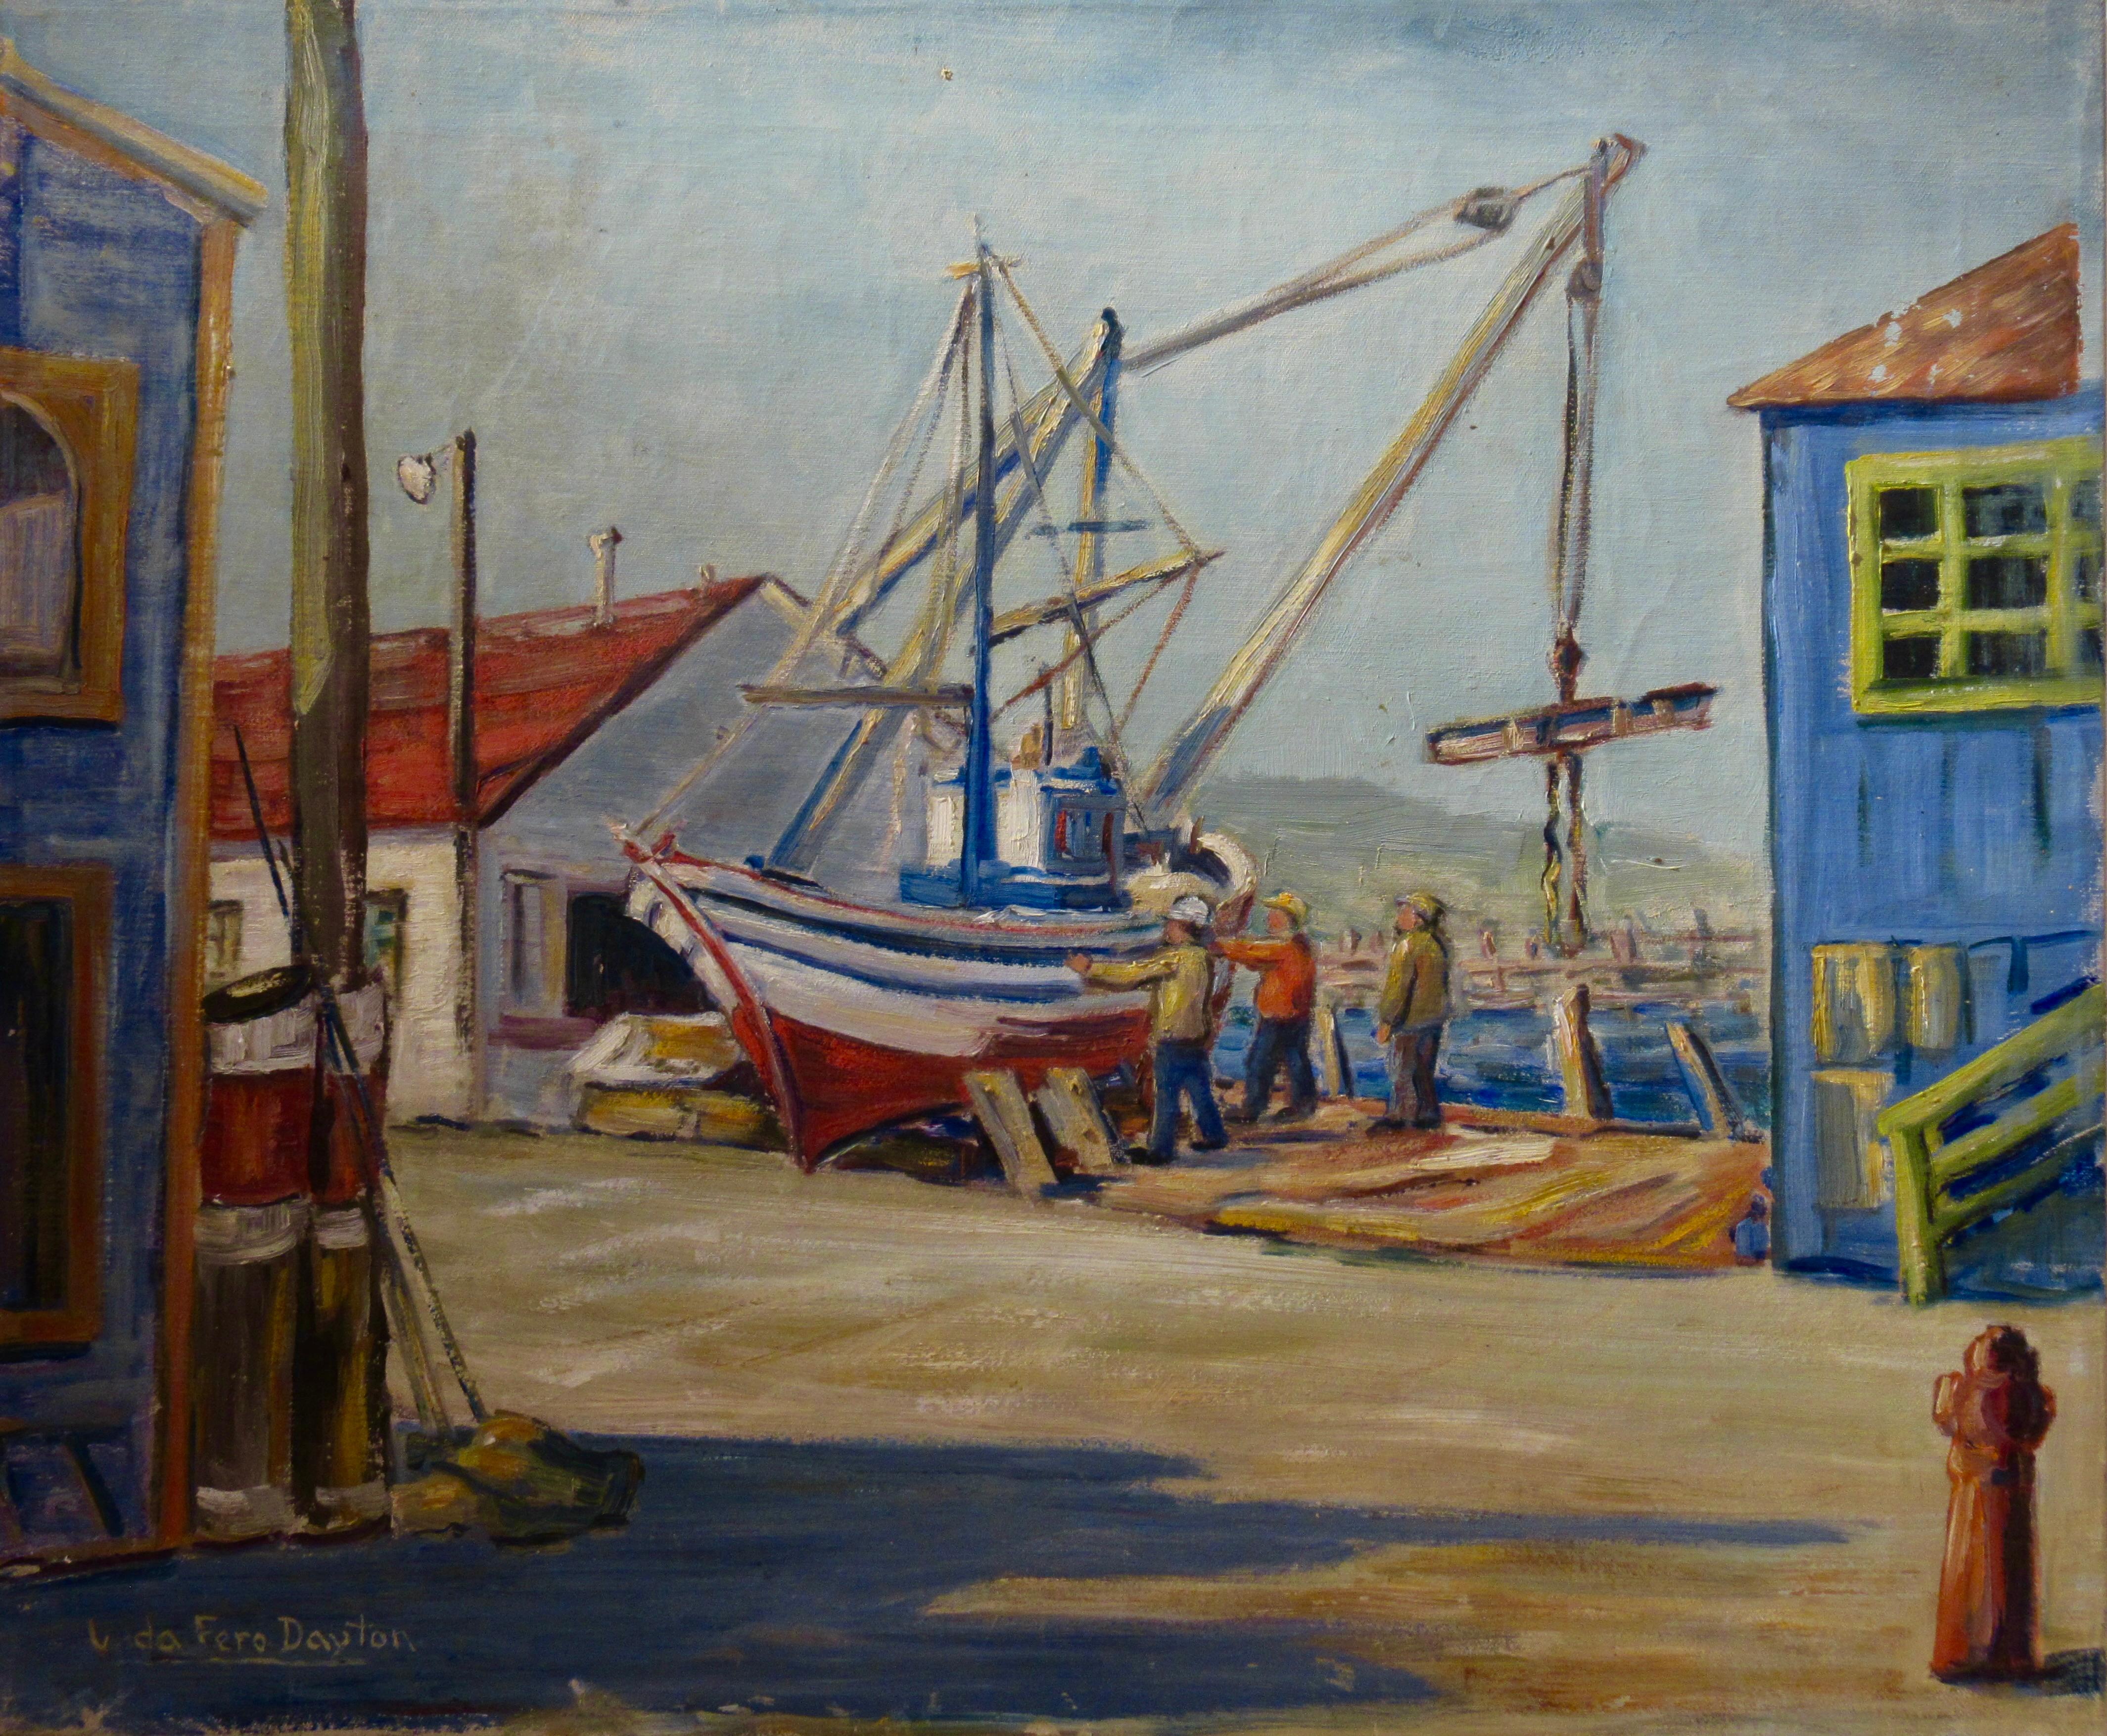 Veda Fero Carnaham Dayton Figurative Painting – Reparaturen von Booten, Monterey Dock